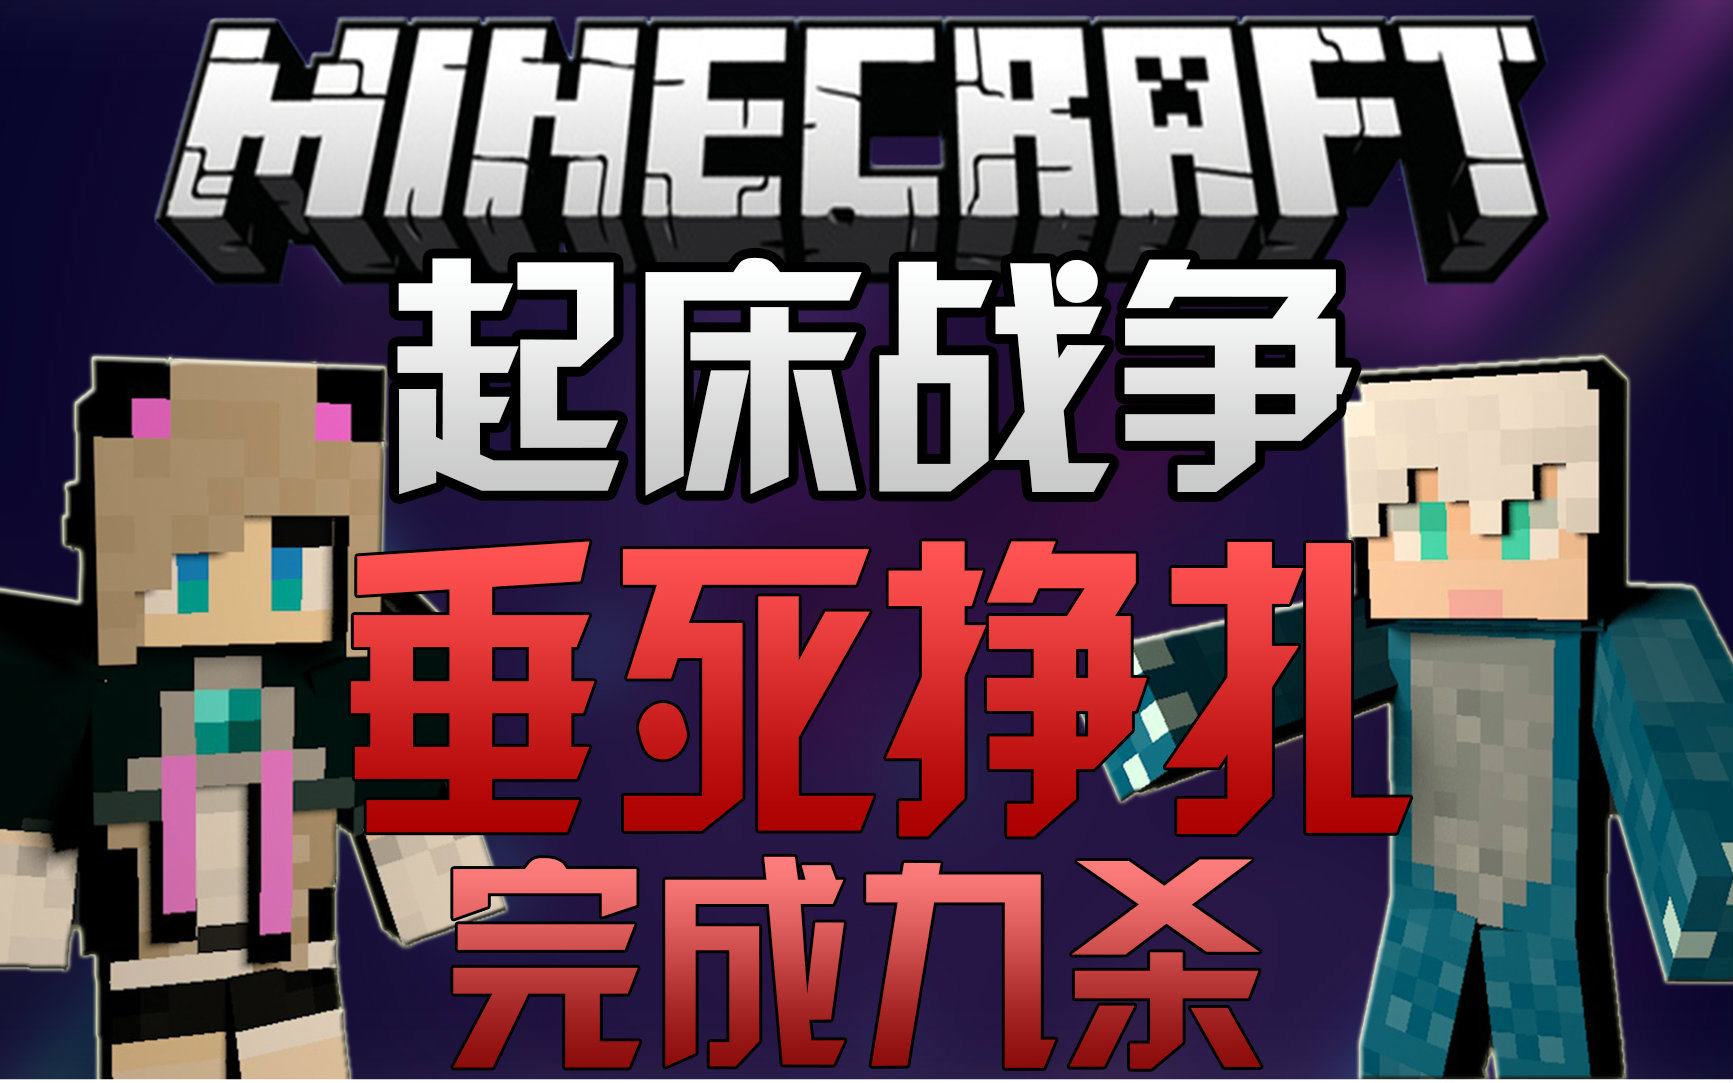 【伊芩&梦想】minecraft我的世界-起床战争#3 垂死挣扎 完成九杀!